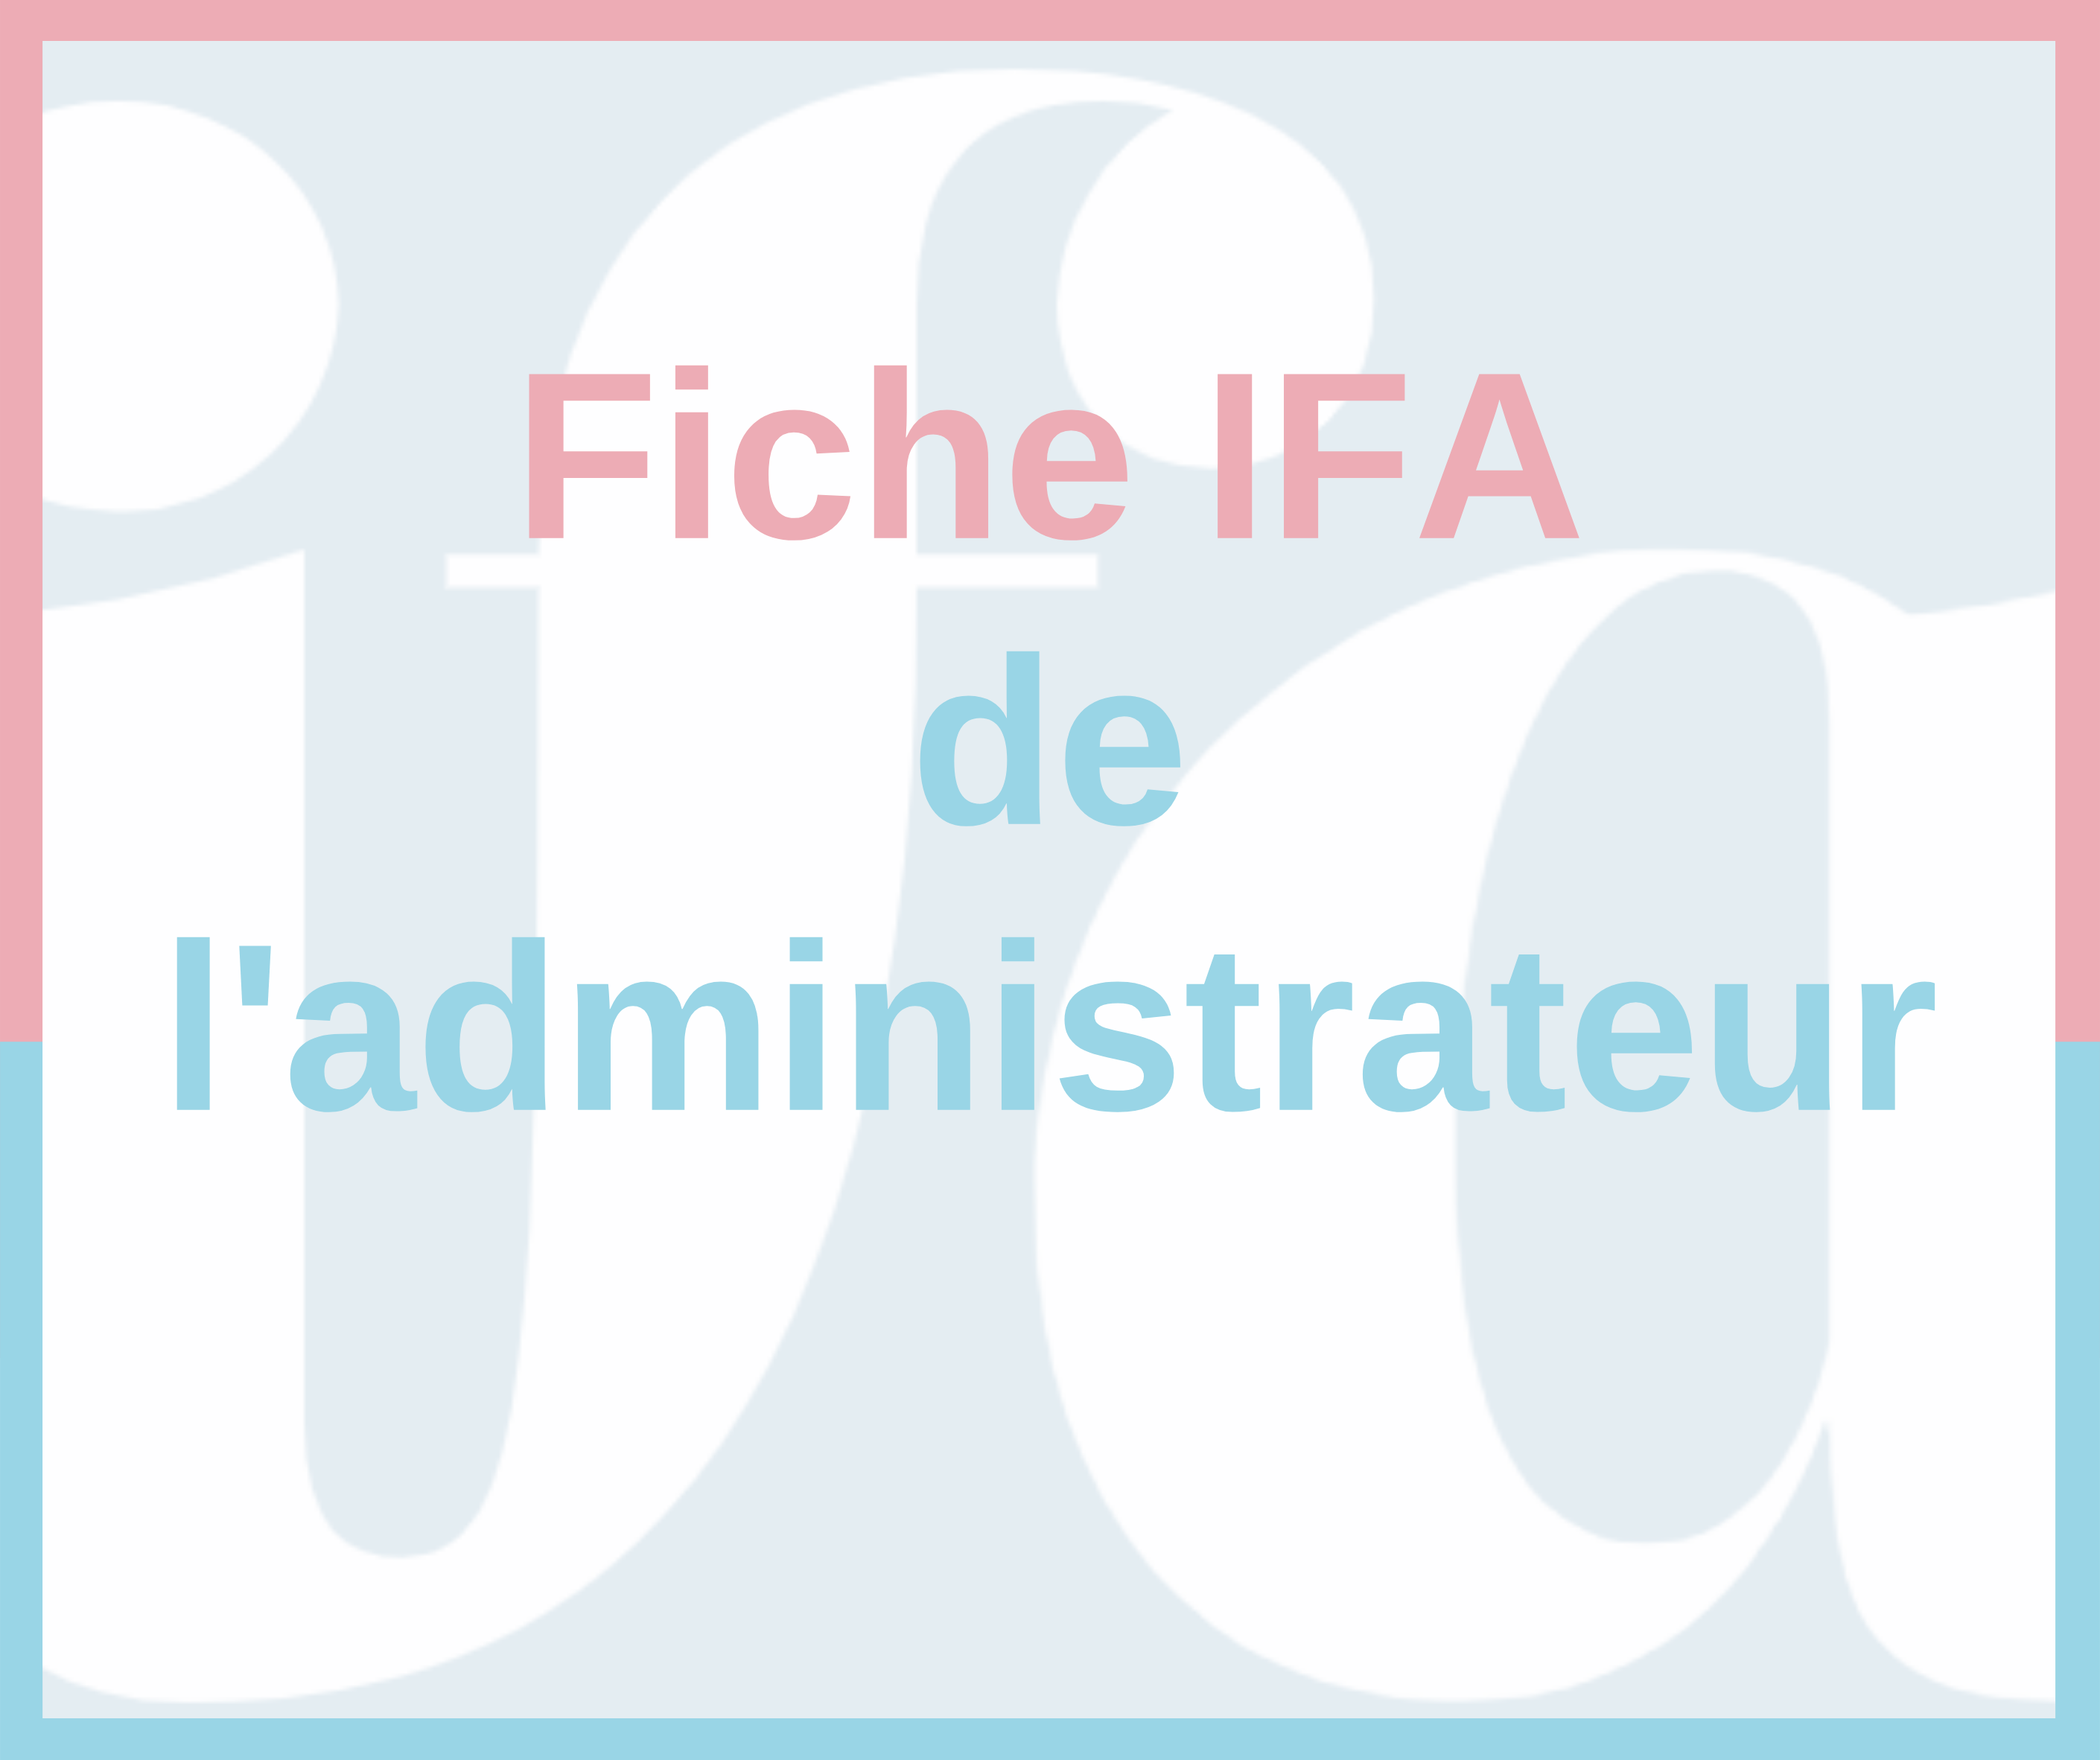 Fiche IFA de l'administrateur - Rapport AMF 2022 sur le gouvernement d’entreprise